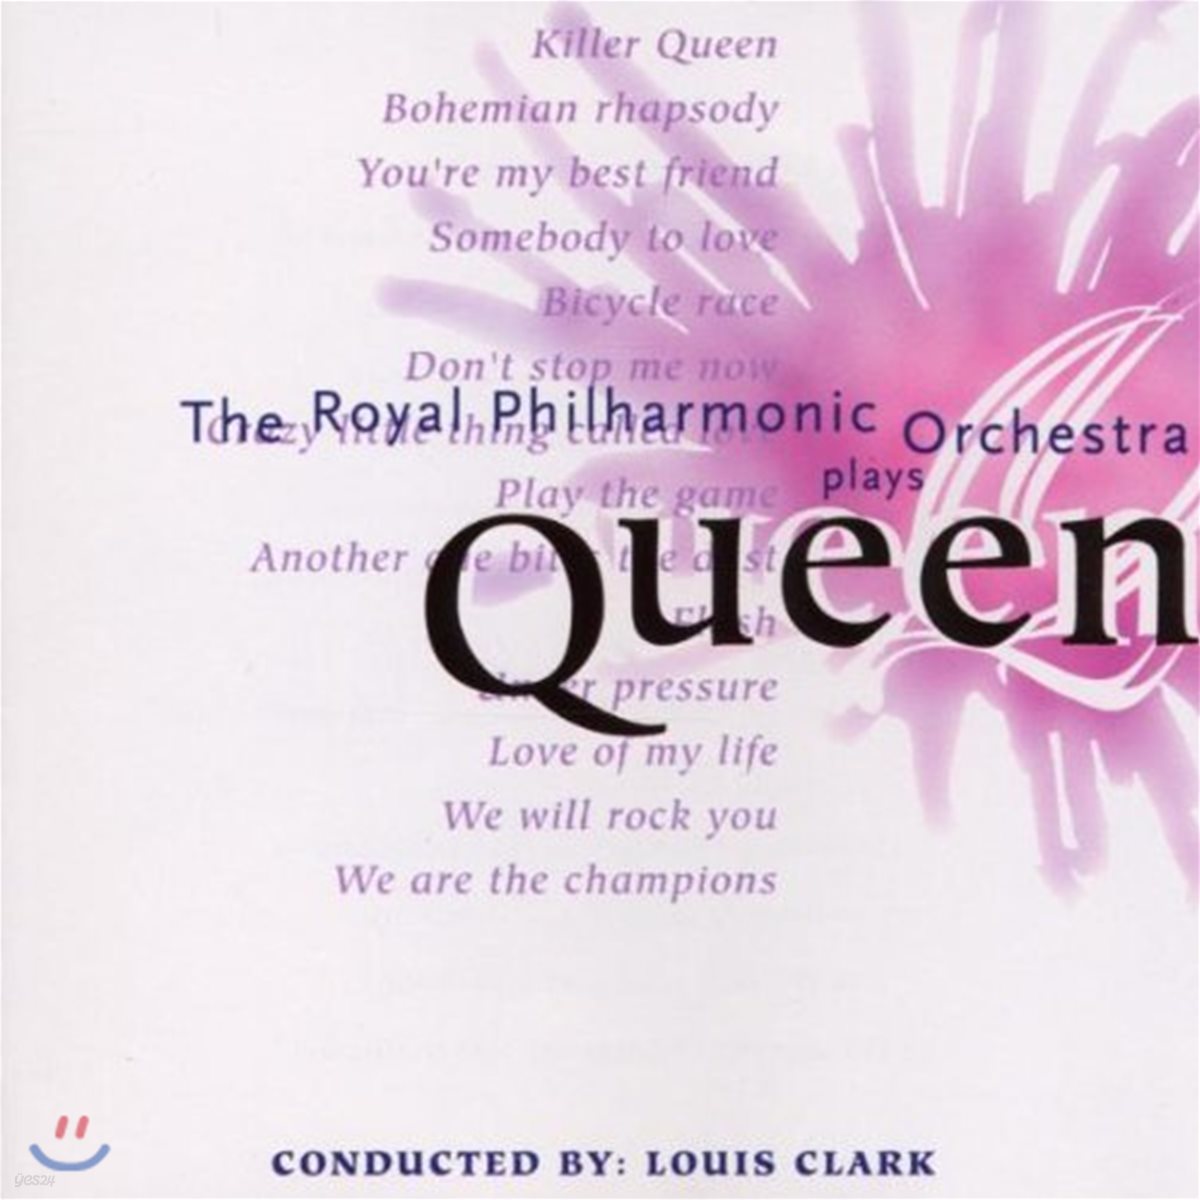 로열 필하모닉 오케스트라가 연주하는 퀸 음악 (The Royal Philharmonic Orchestra Plays Queen)